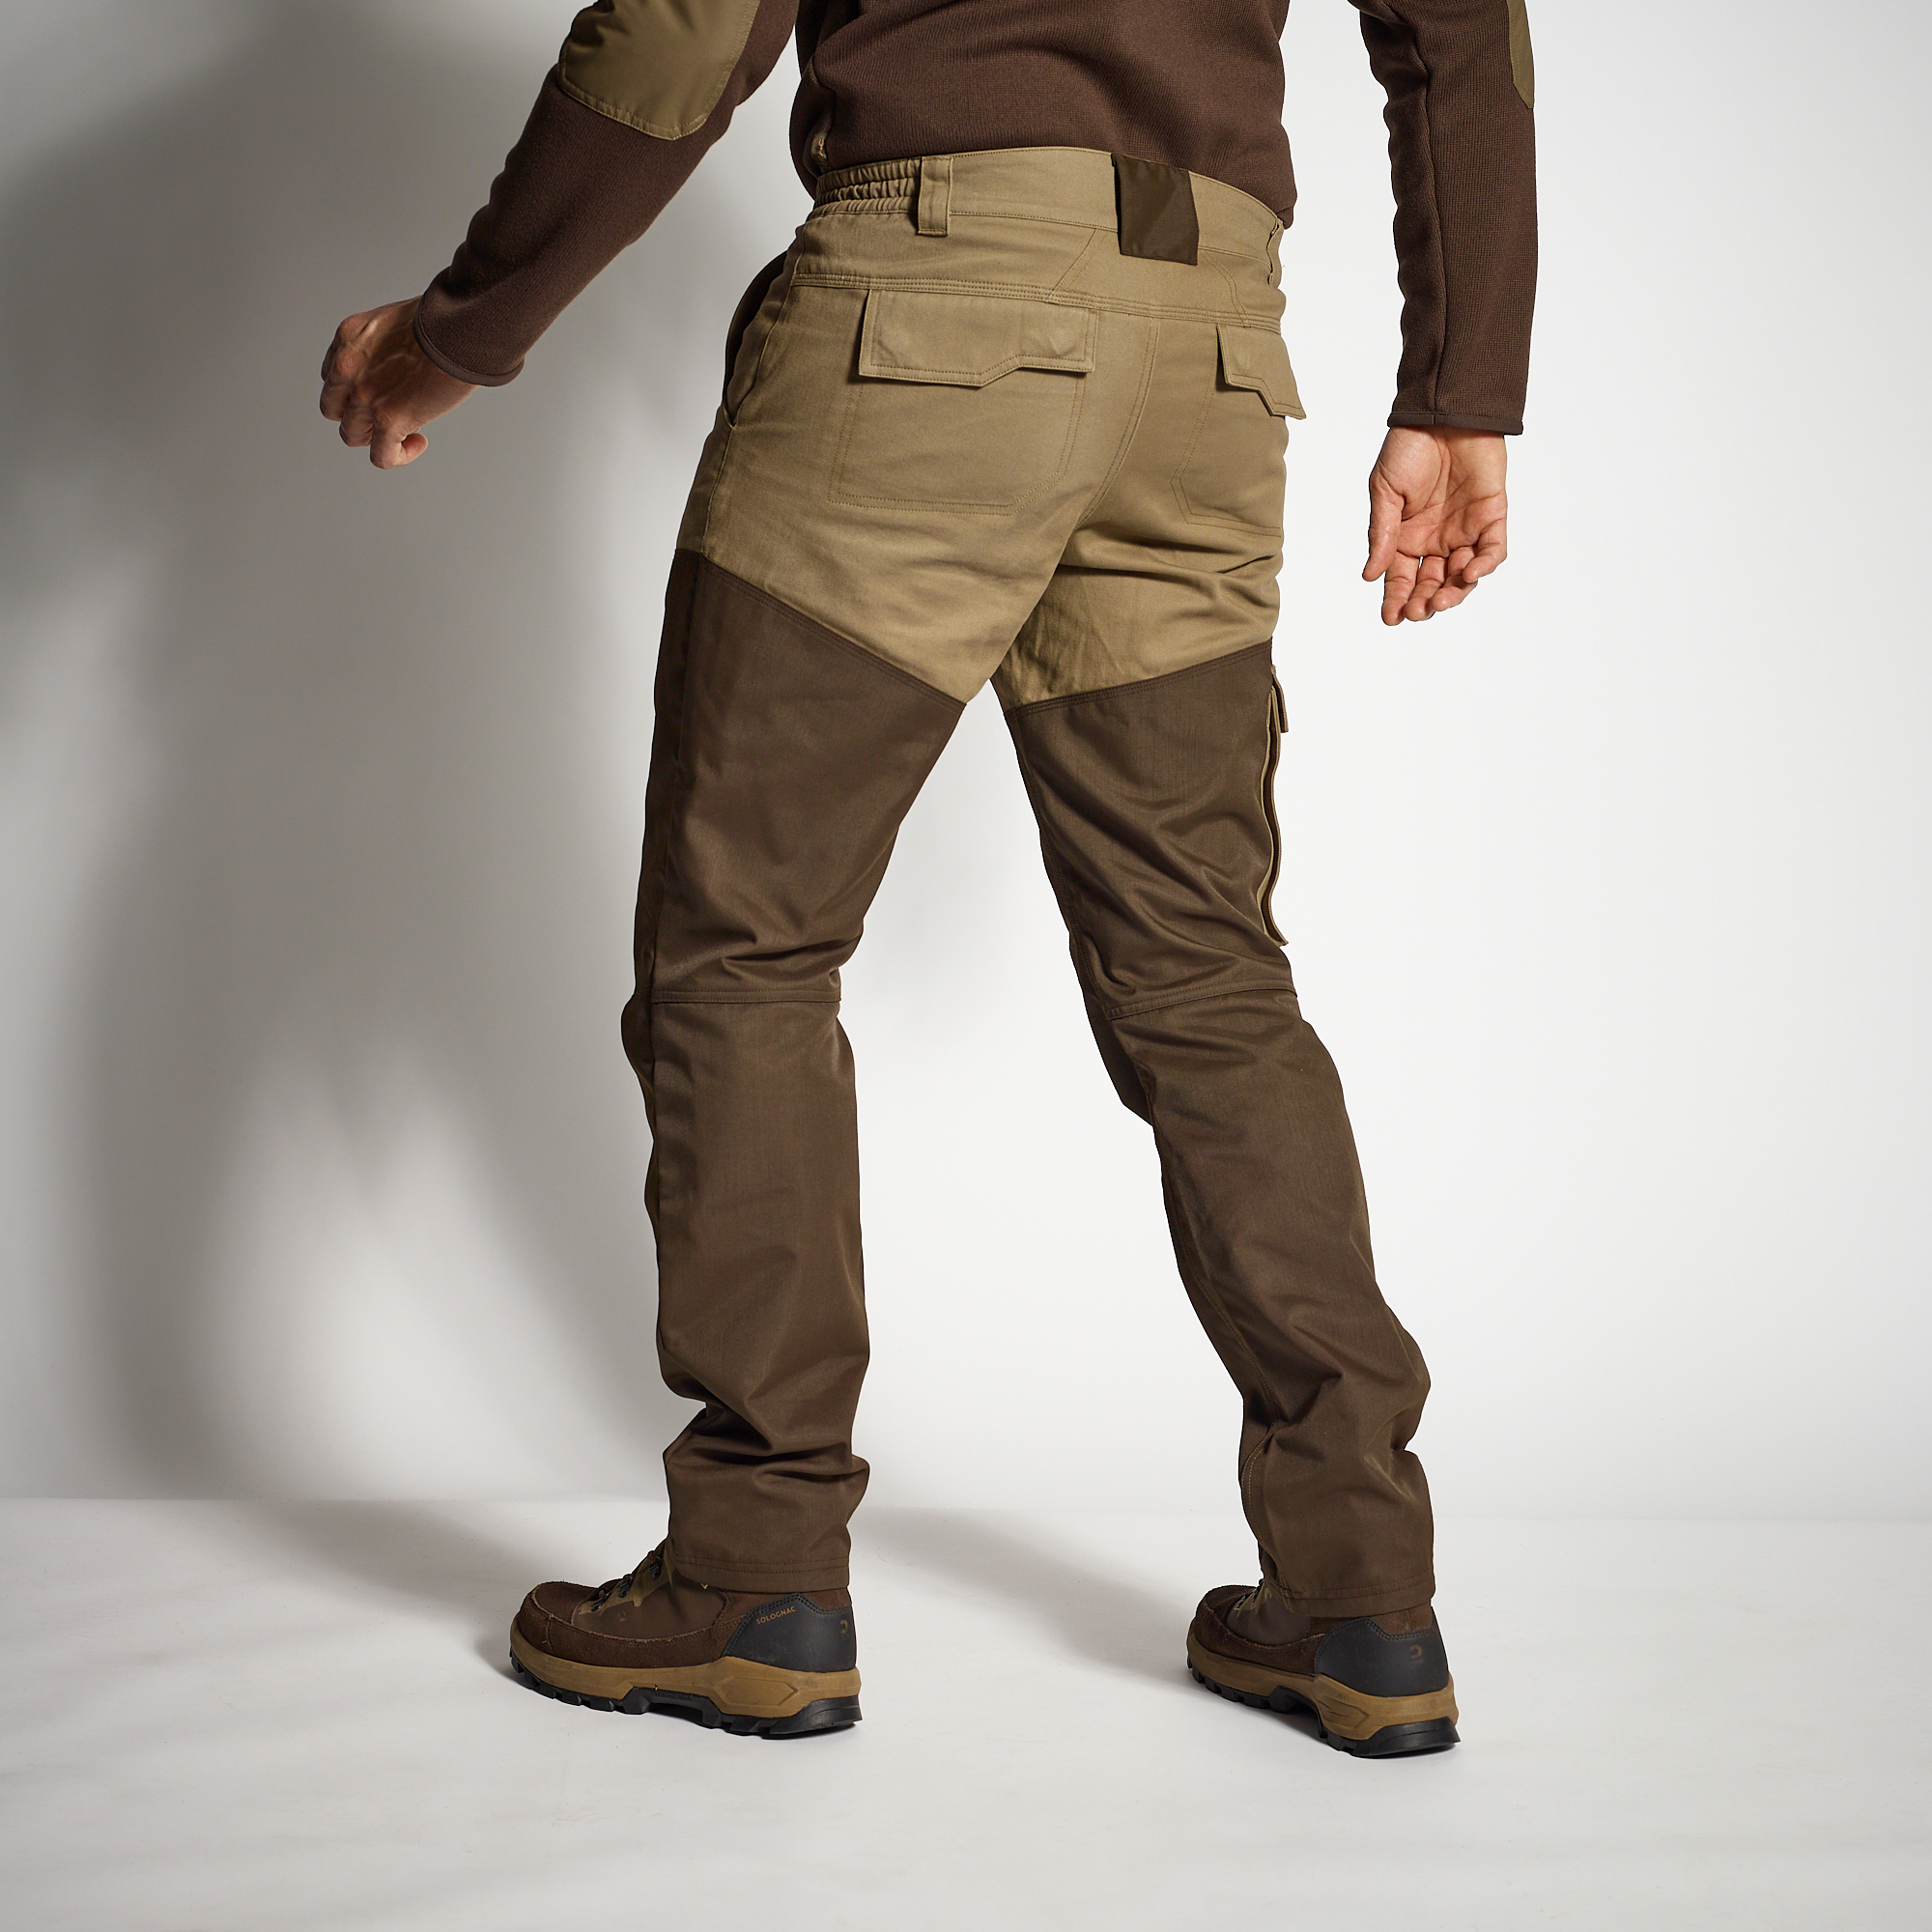 Safari Sport Pantalon Couleur Mimétique pour Homme Taille 56, 8 Poches